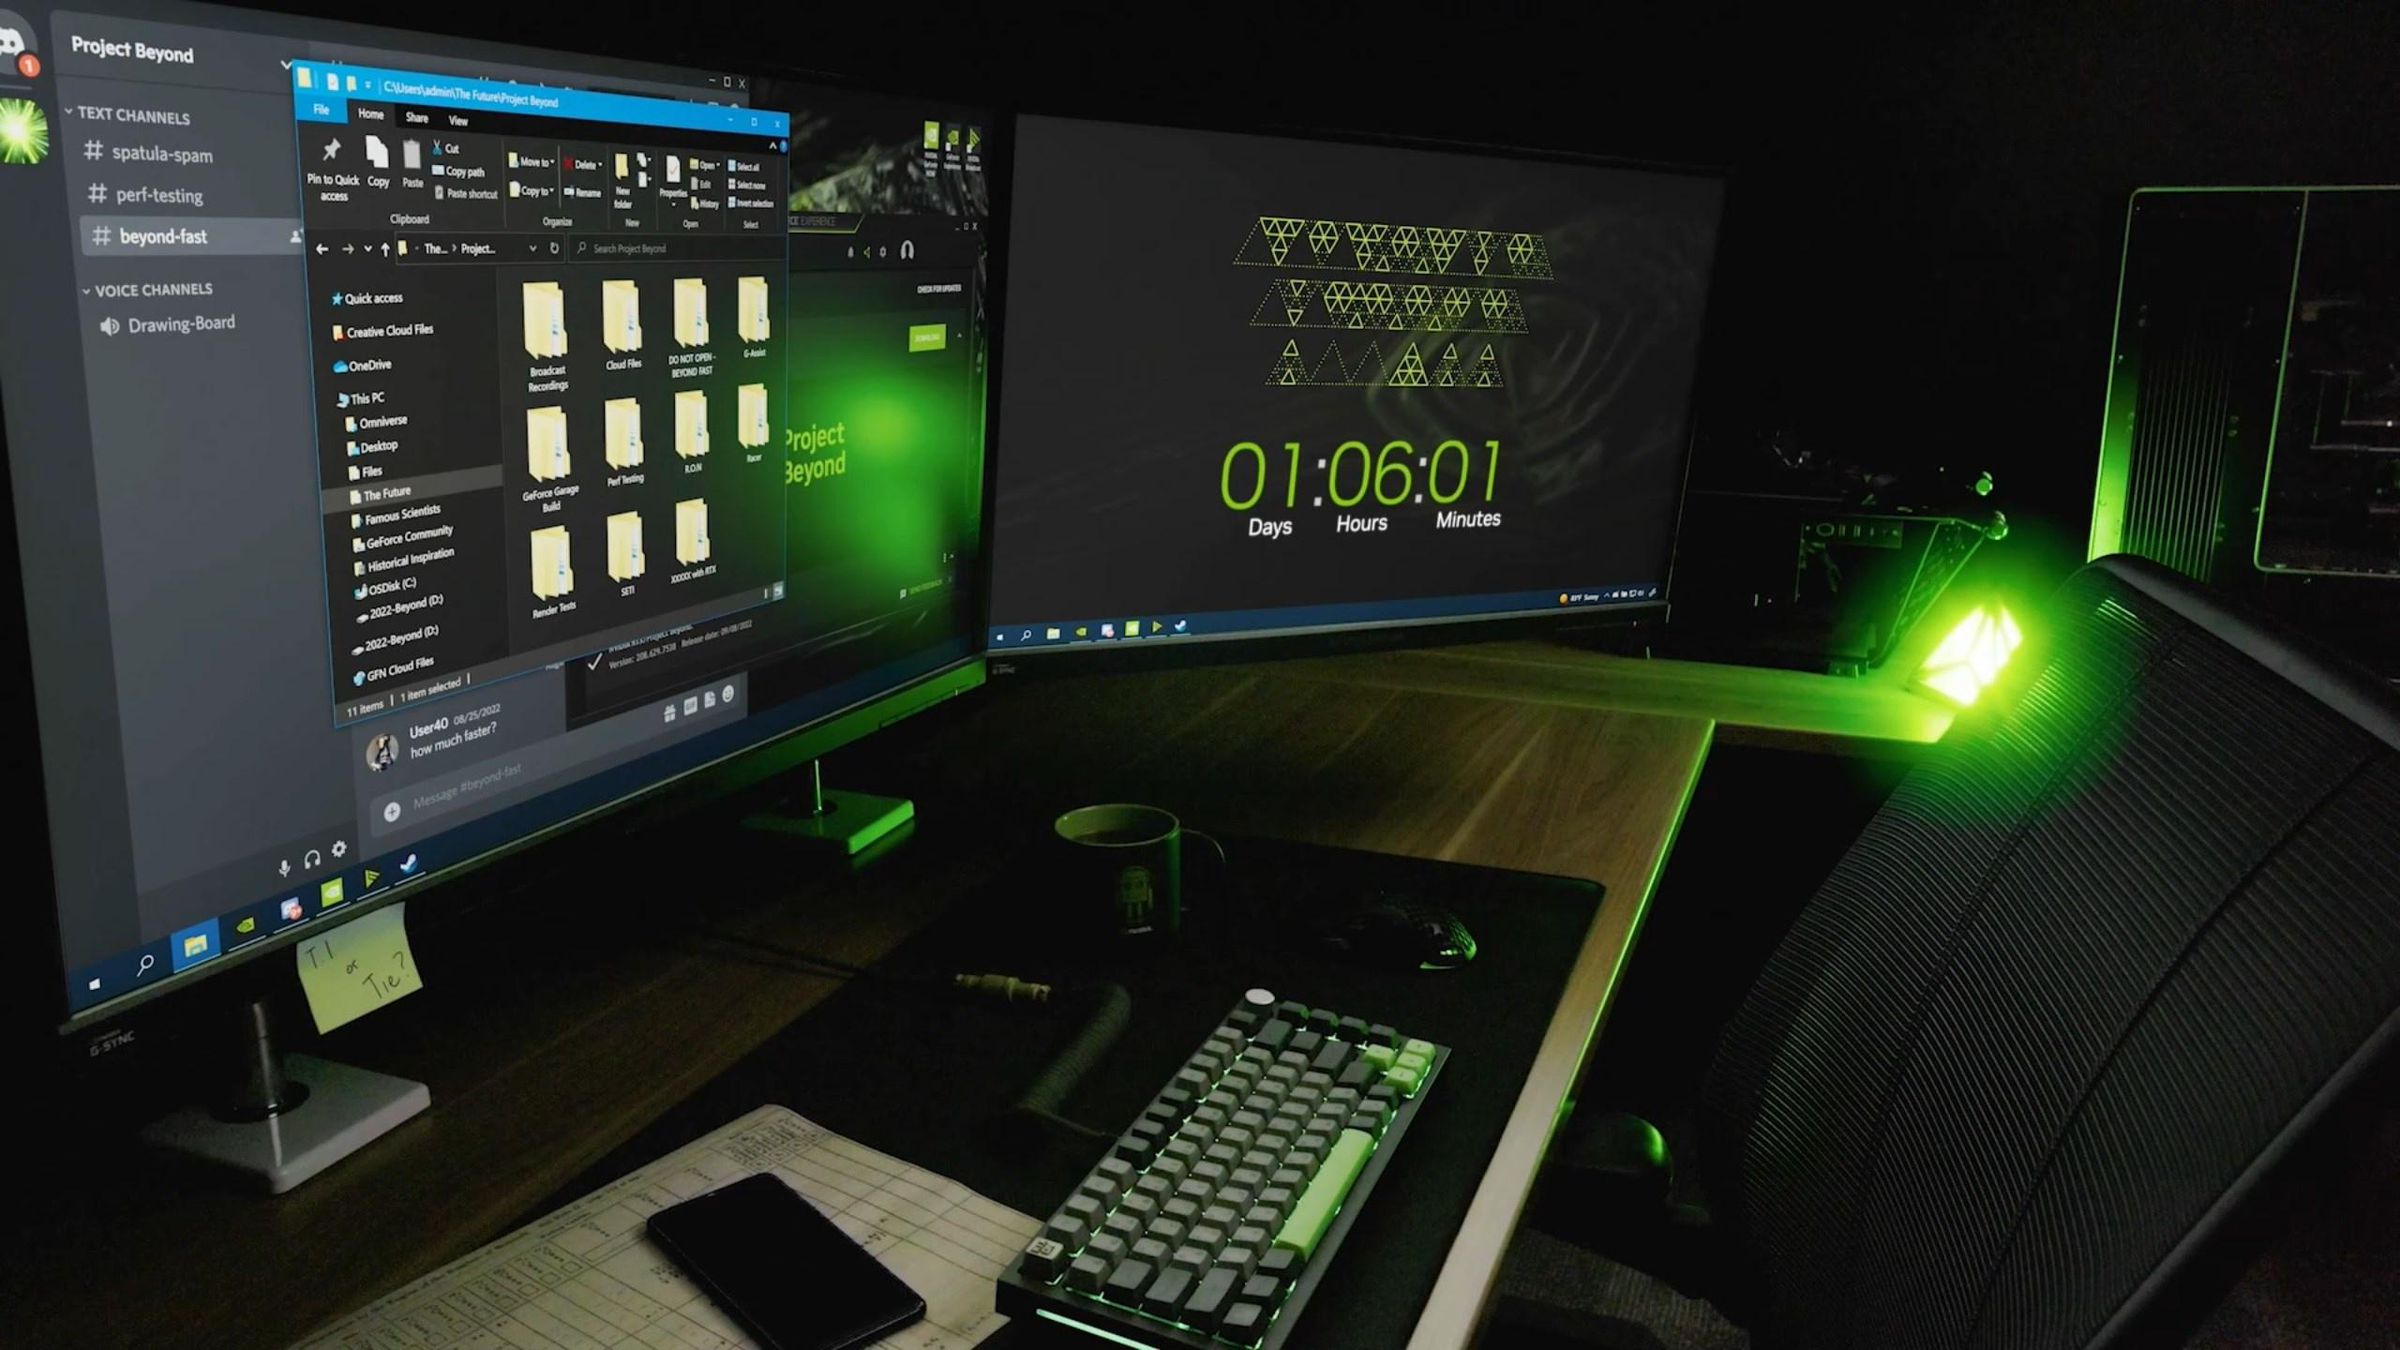 Nvidia’s 40-hour countdown stream